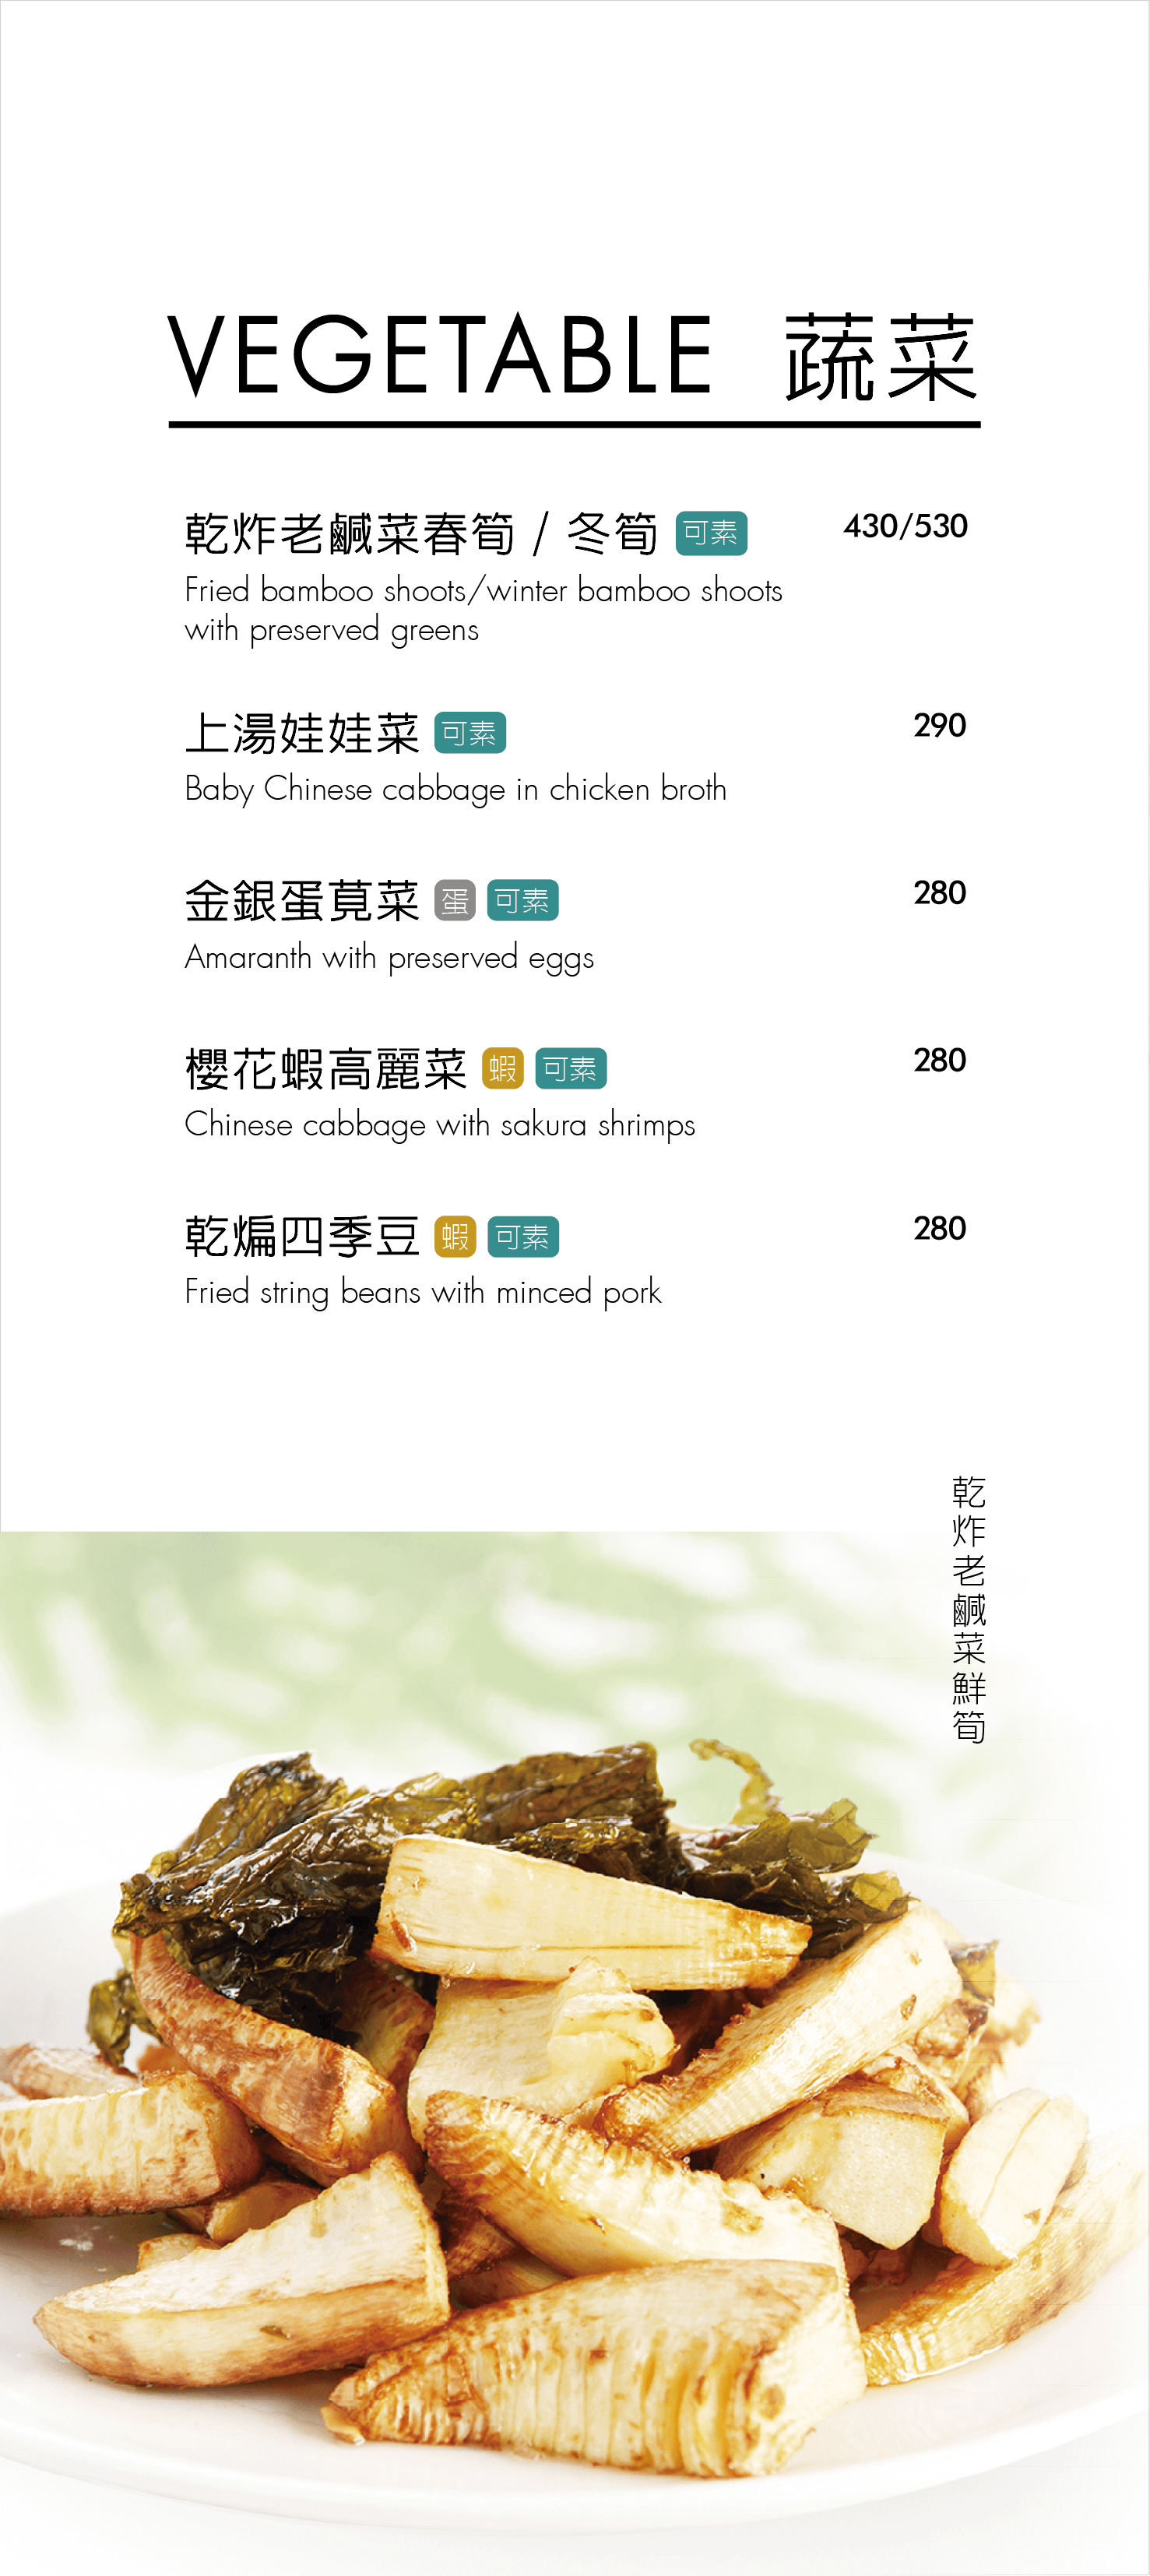 紅豆食府菜單MENU